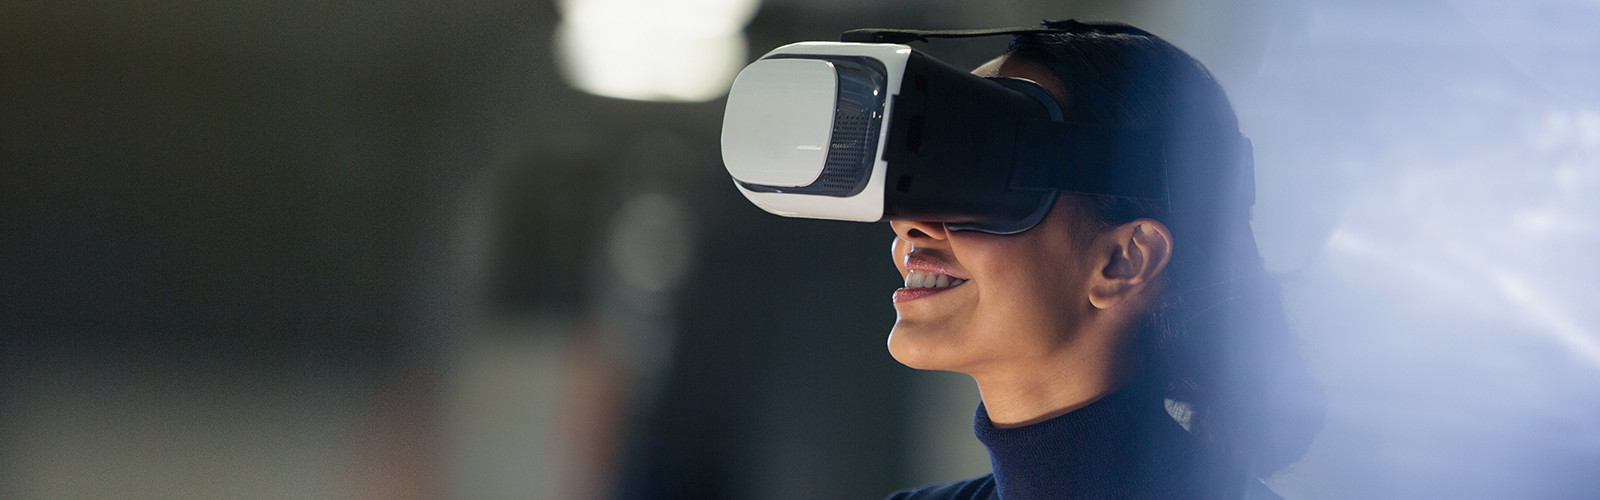 Mujer llevando un casco de realidad virtual